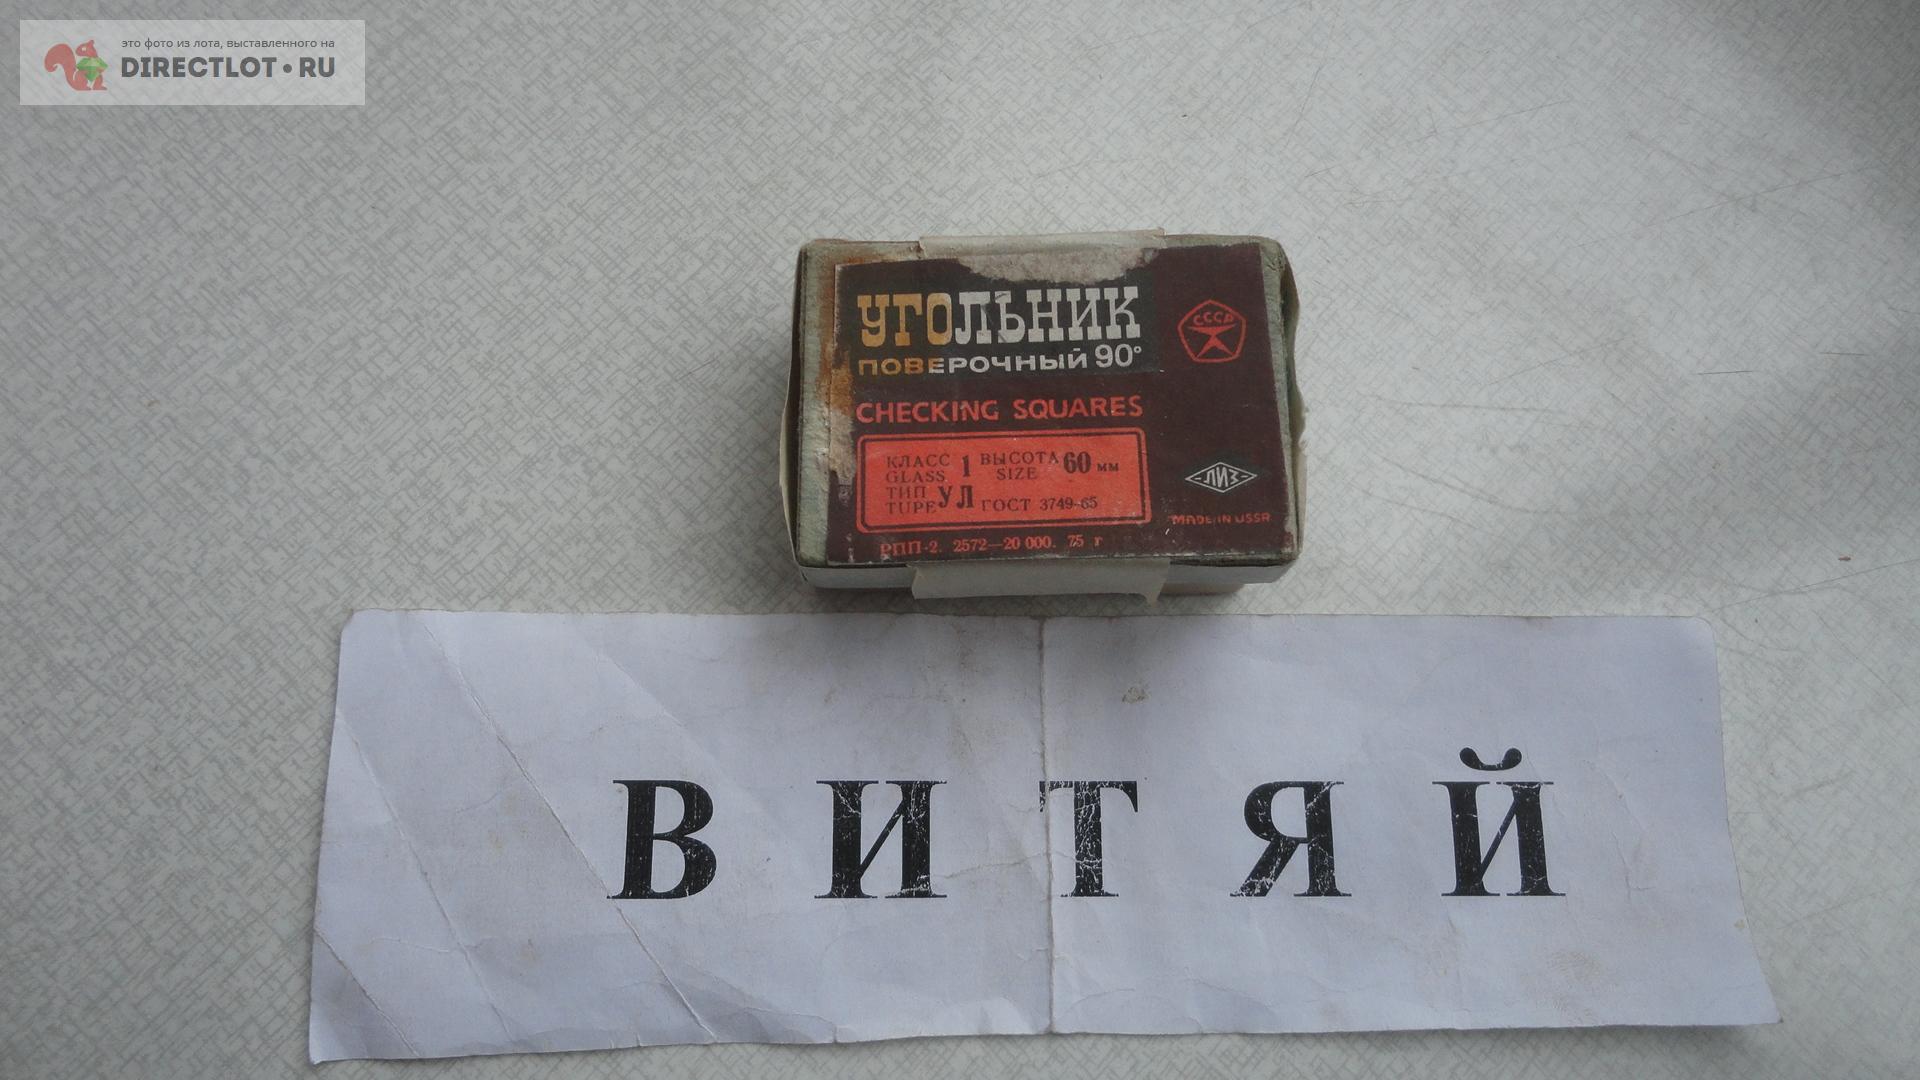  лекальный (плитка) УЛ 60 кл. 1. №8485  в Ульяновске цена .